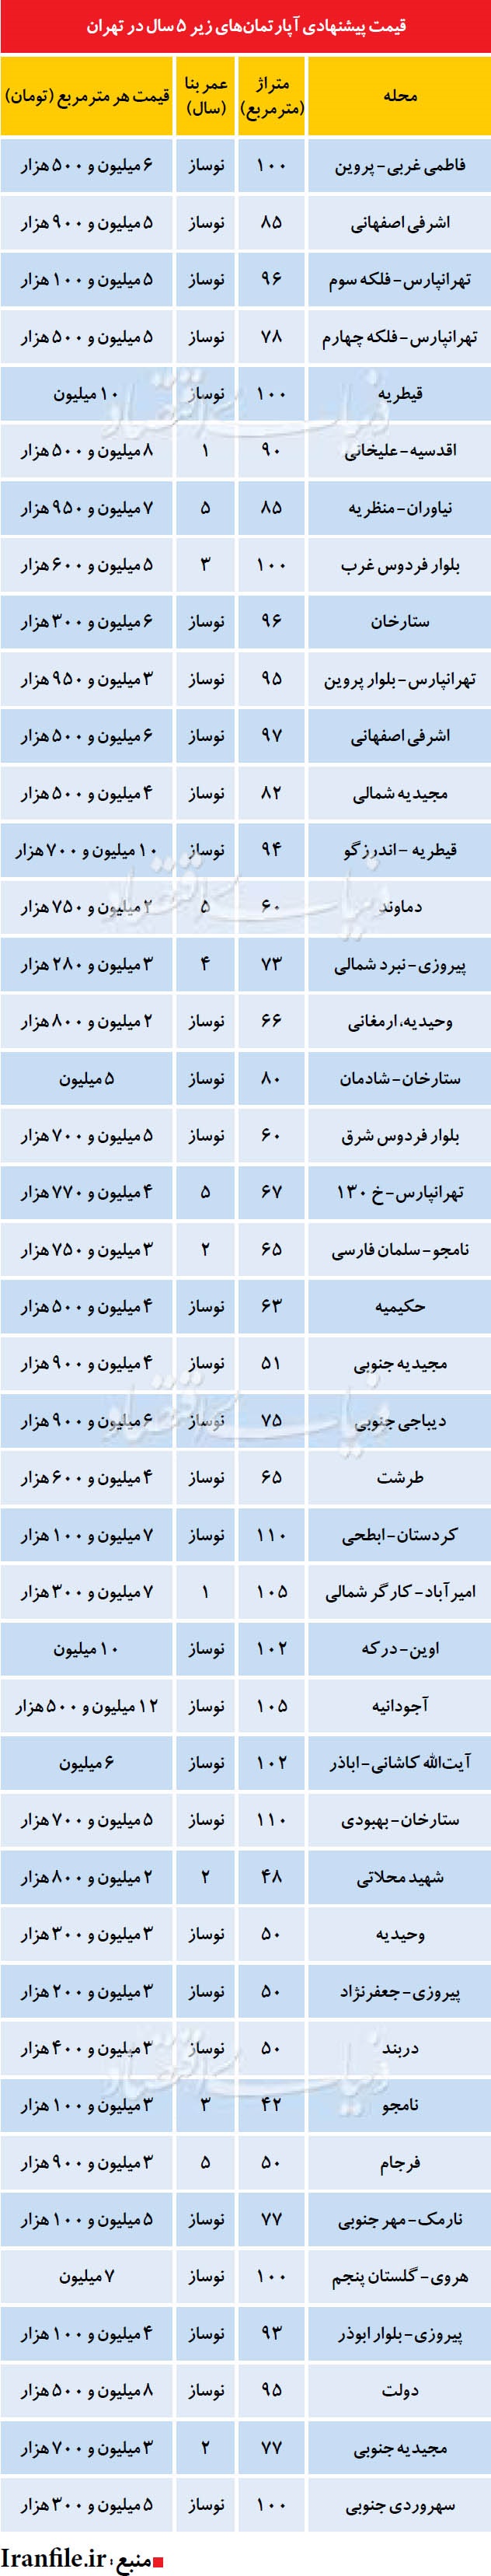 قیمت آپارتمان های زیر 5سال در تهران (جدول)